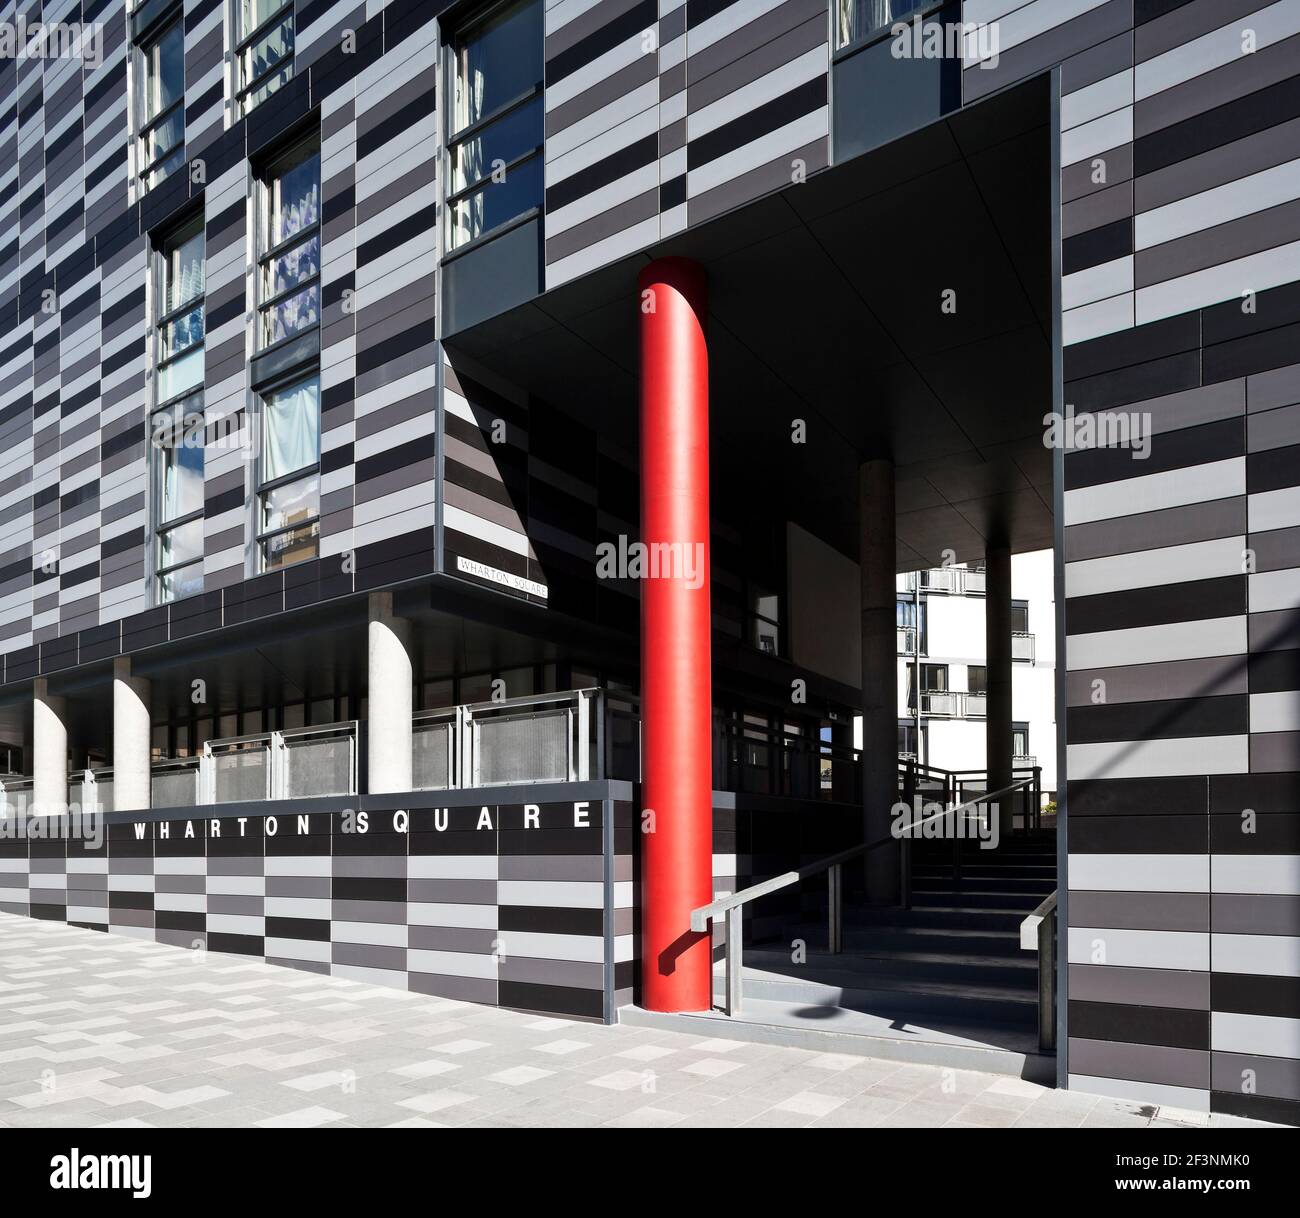 Wharton Square, social Housing avec panneaux horizontaux gris gradués à l'extérieur, agencer dans une forme octogonale autour d'une cour centrale. Rouge c Banque D'Images